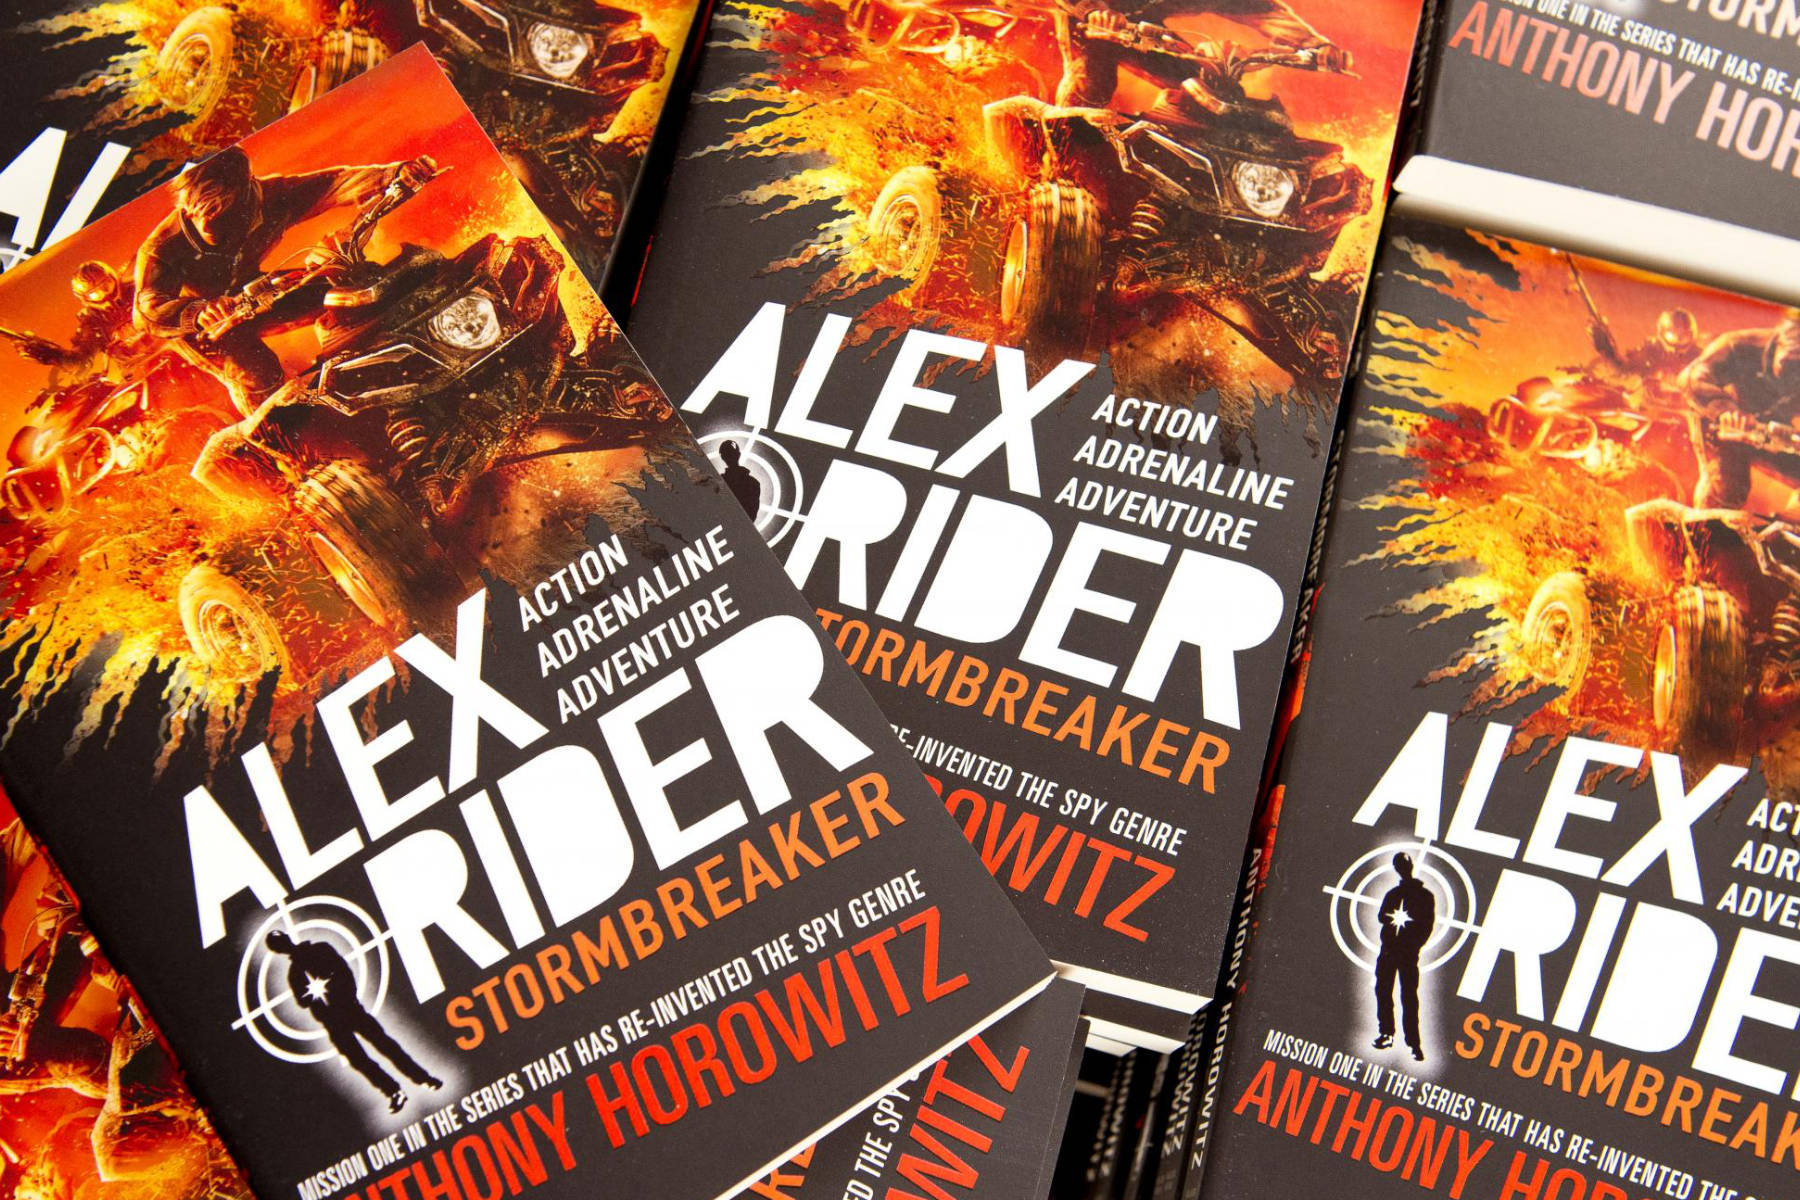 Alex Rider Stormbreaker book covers